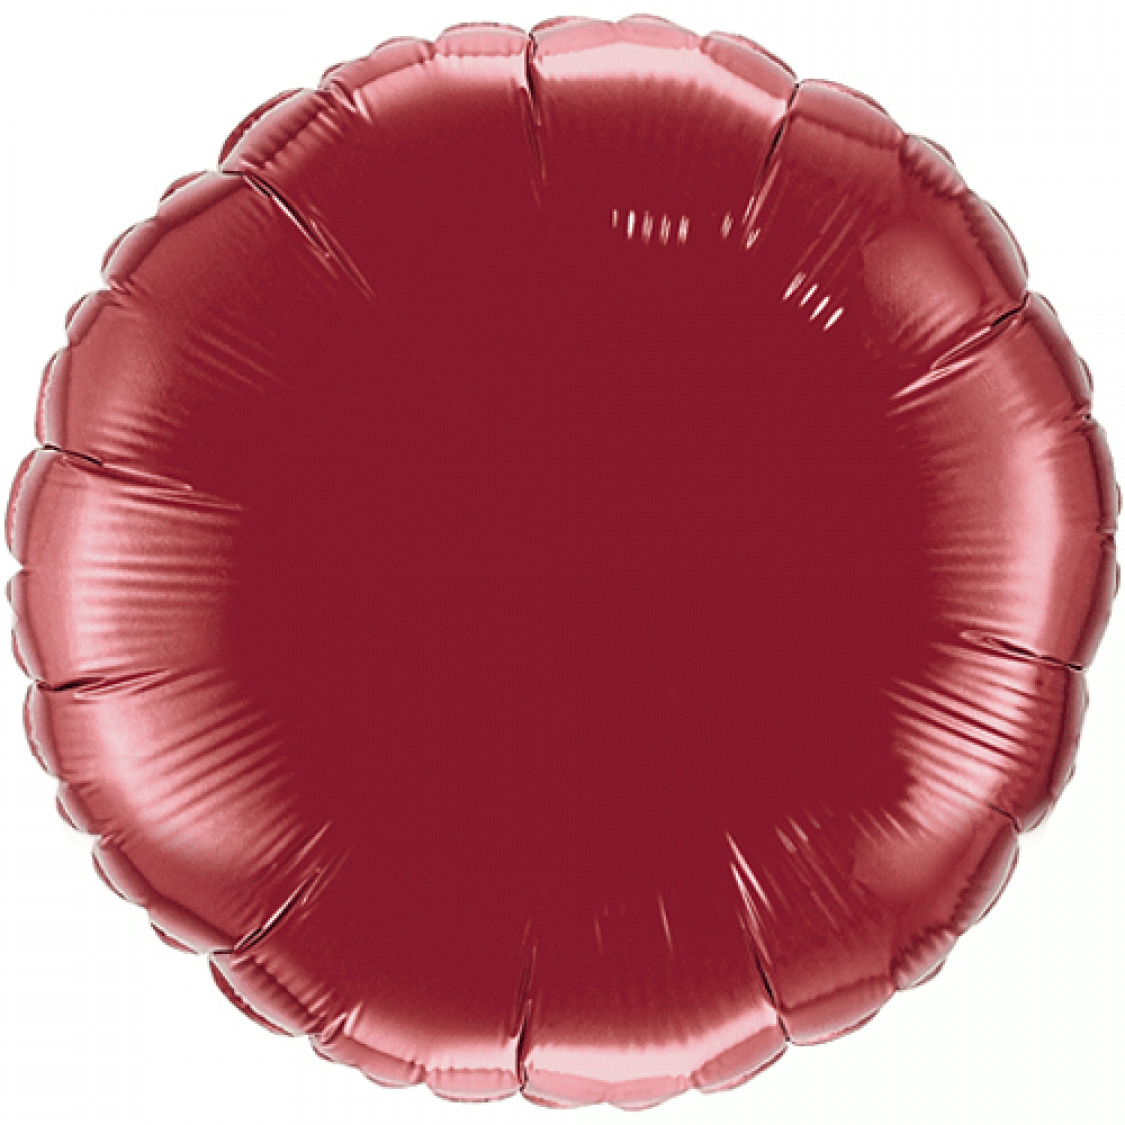 Ballon Mylar rond bordeaux (burgundy)